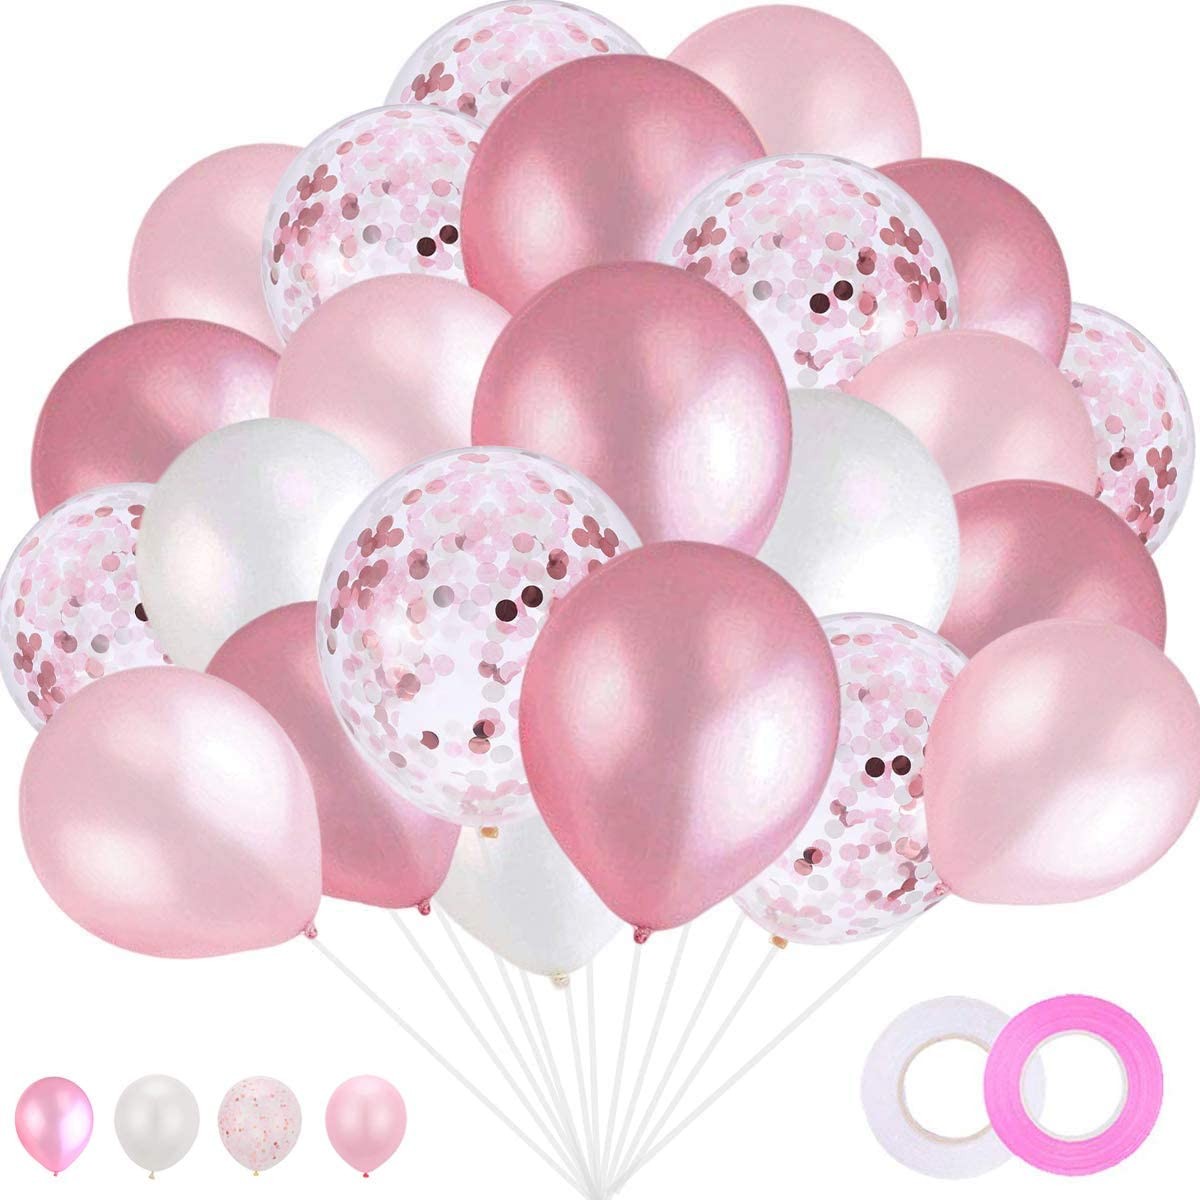 Palloncini rosa e bianchi, 20 palloncini in lattice rosa da 30,5 cm,  palloncini bianchi, palloncini per feste, matrimoni, lauree, fidanzamenti,  baby